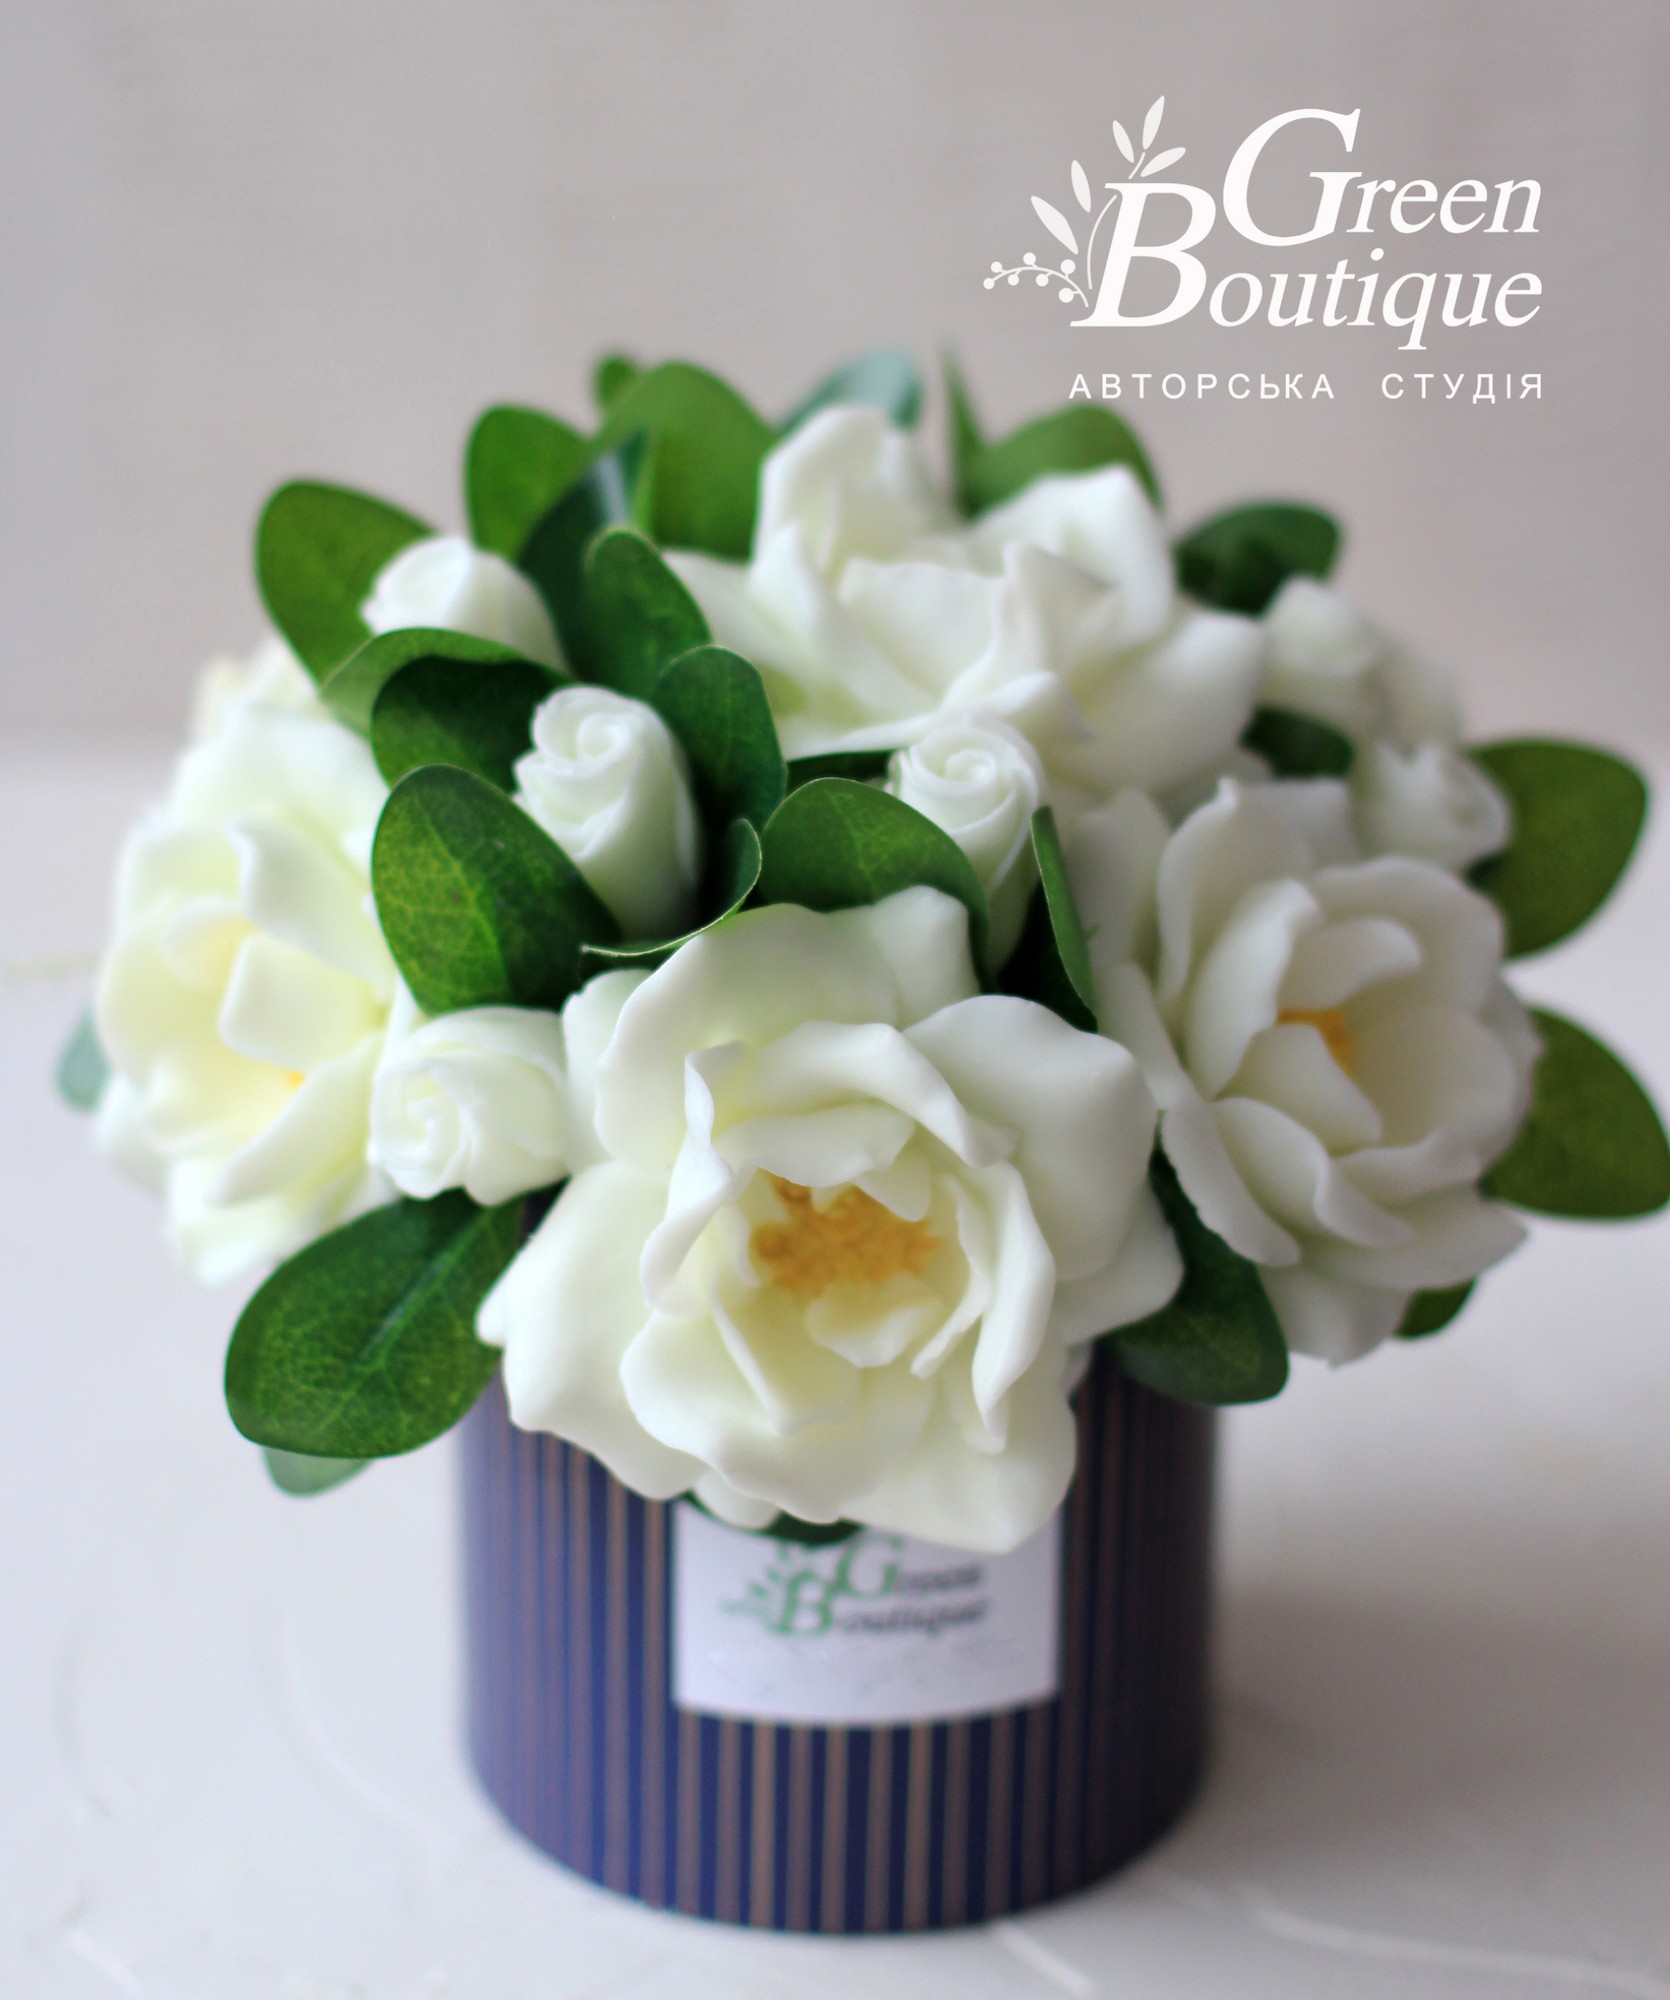 A luxurious interior bouquet of soap gardenias